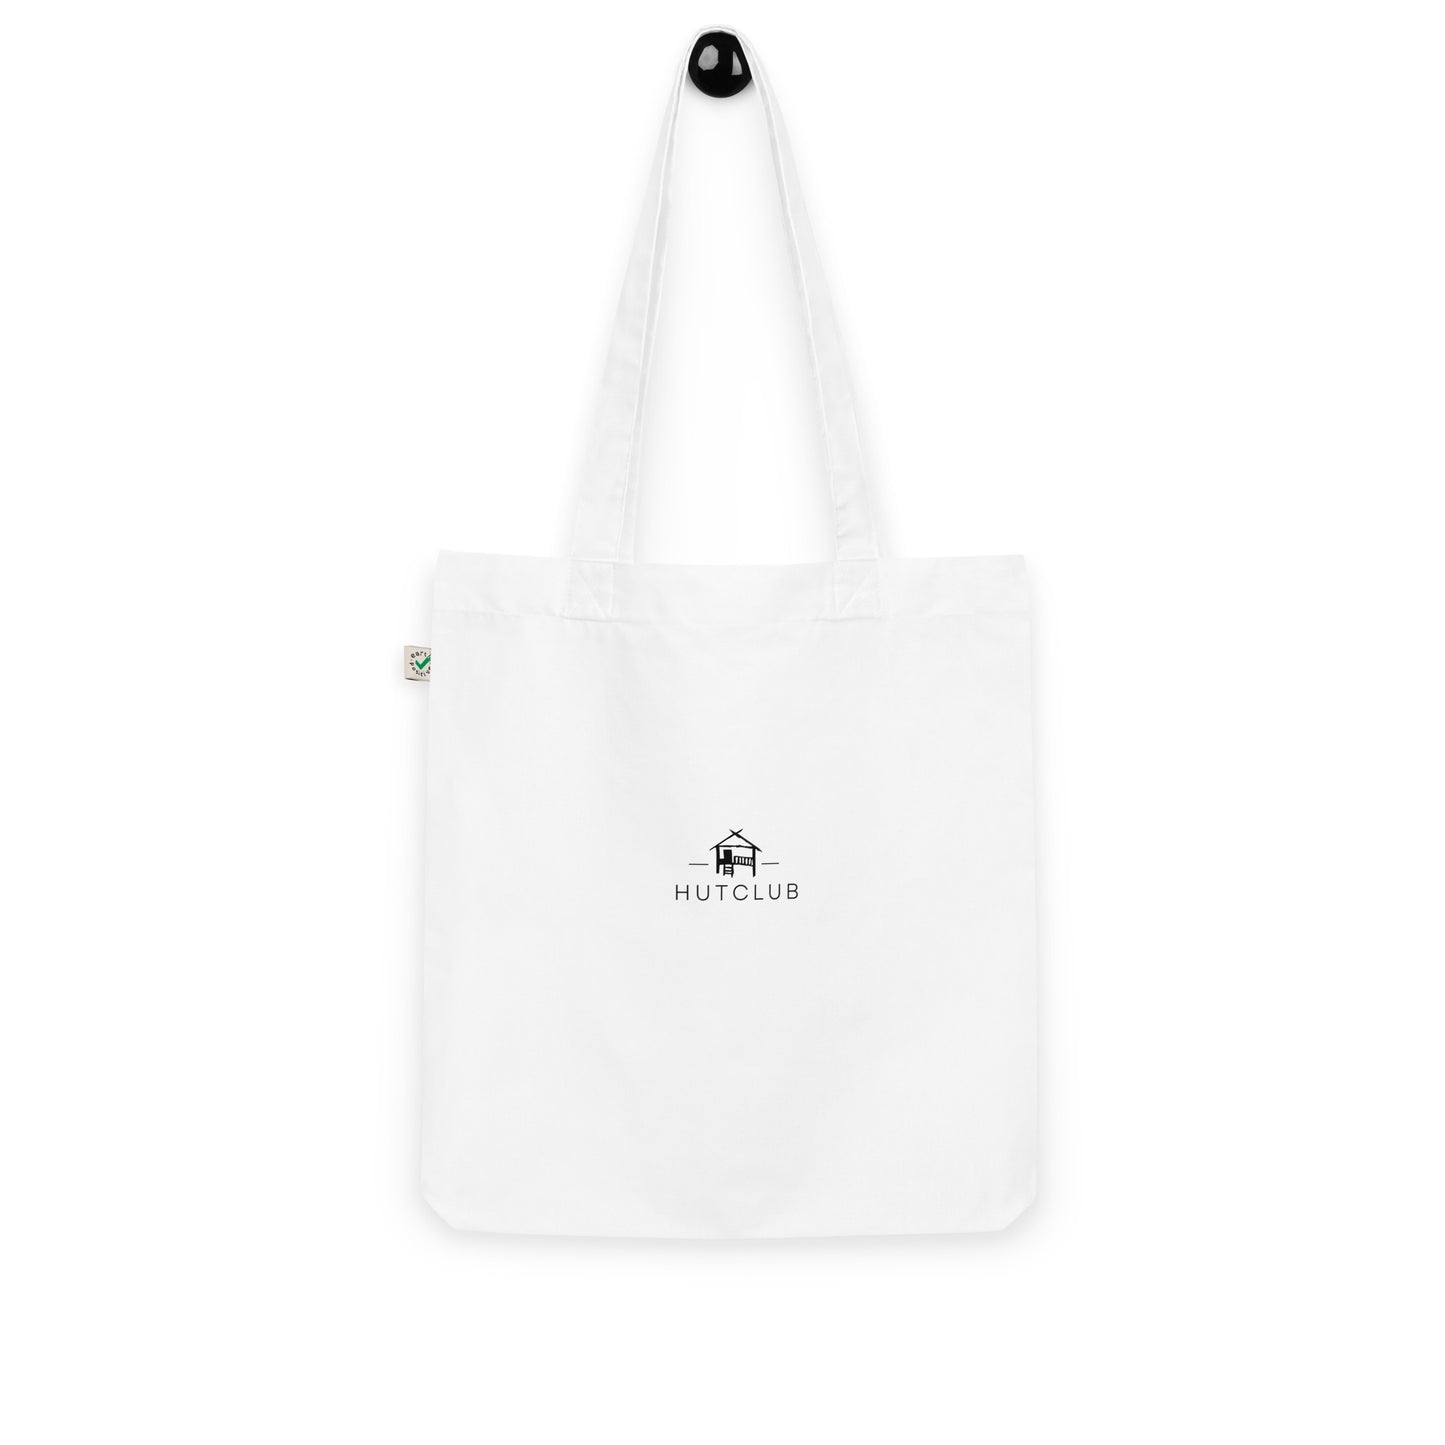 Hutclub - Organic fashion tote bag